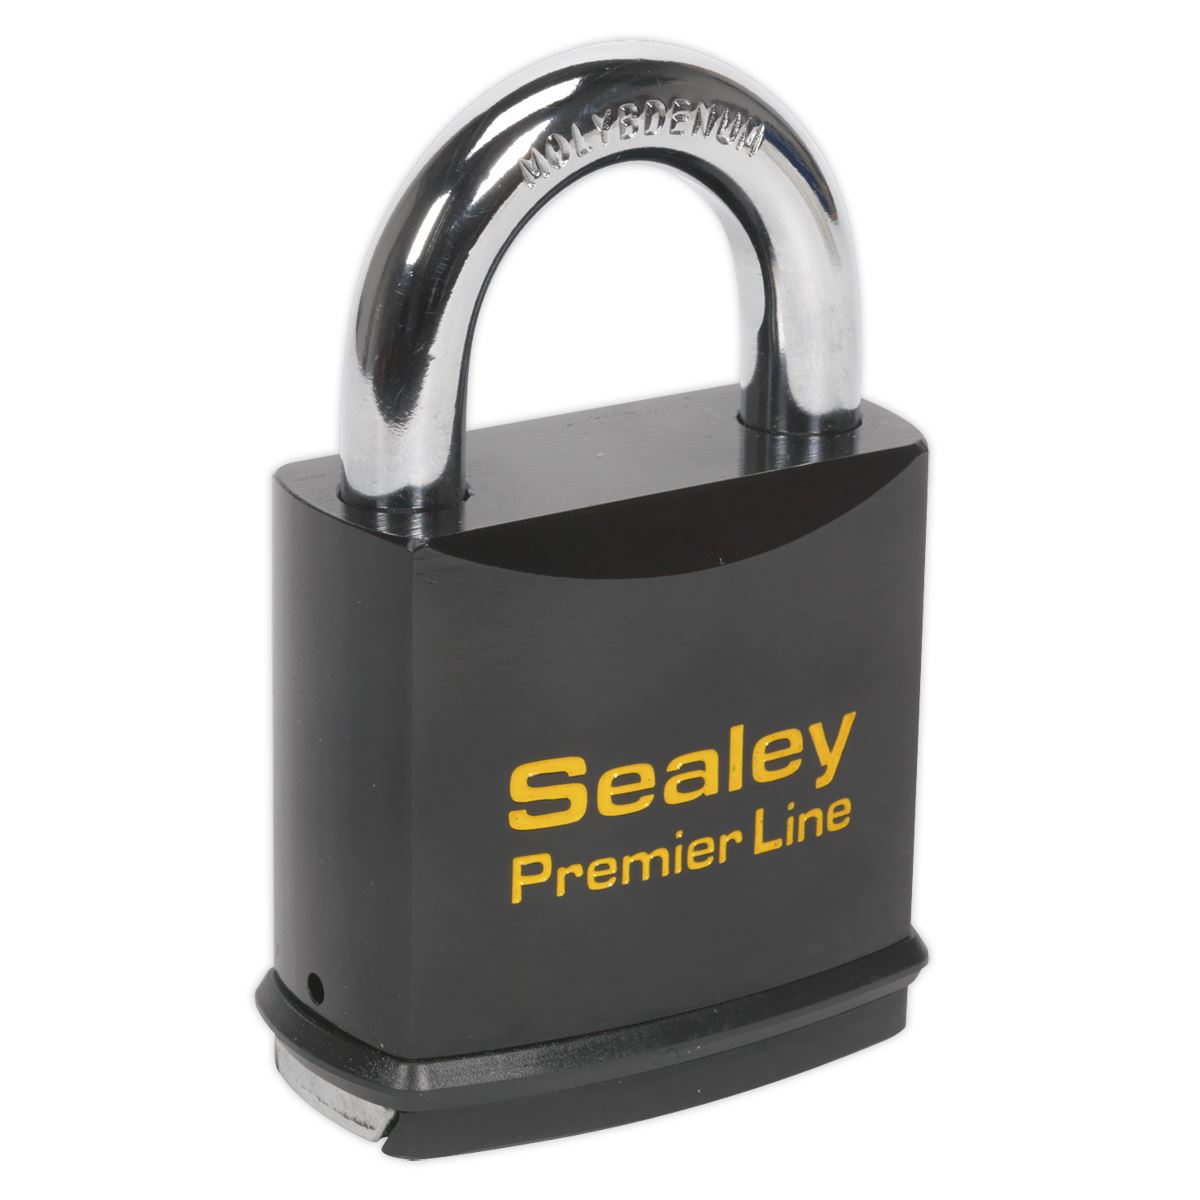 Sealey Premier Steel Body Padlock 61mm